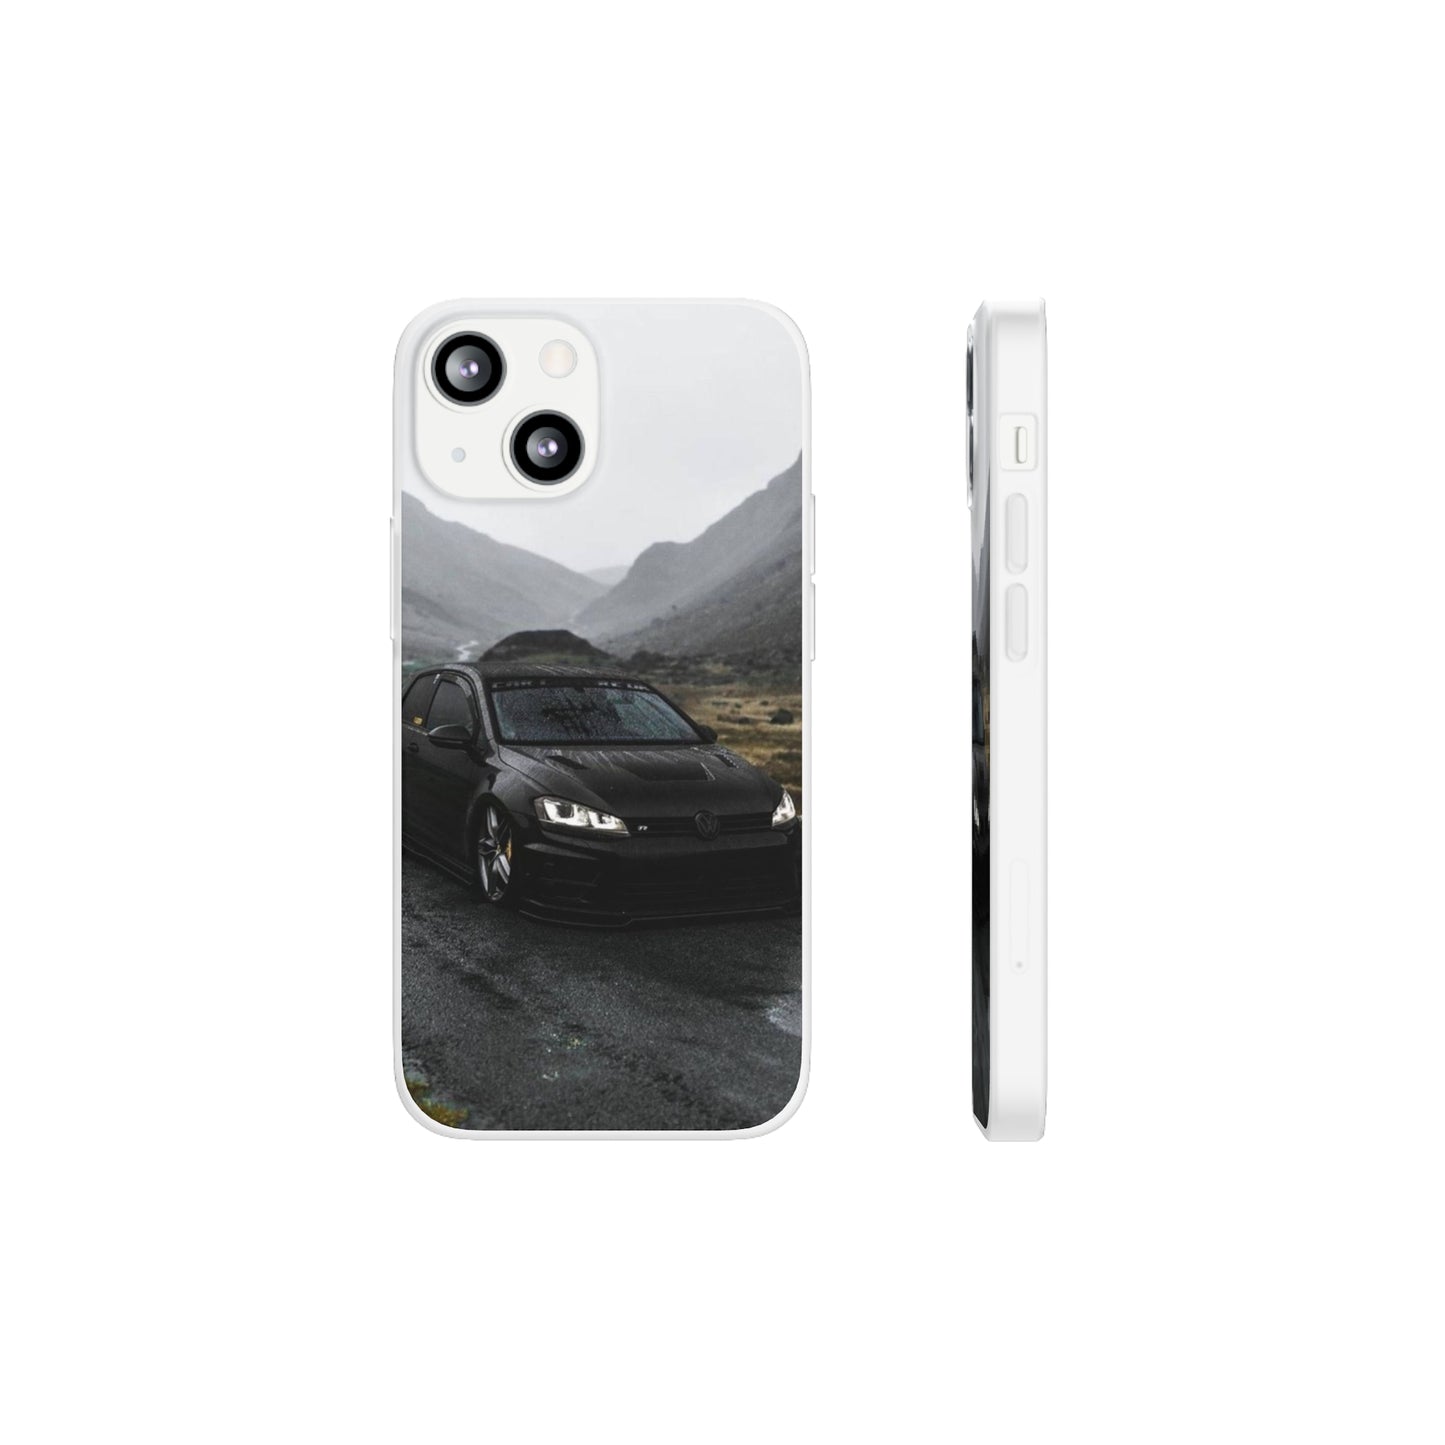 Volkswagen Golf R Phone Case